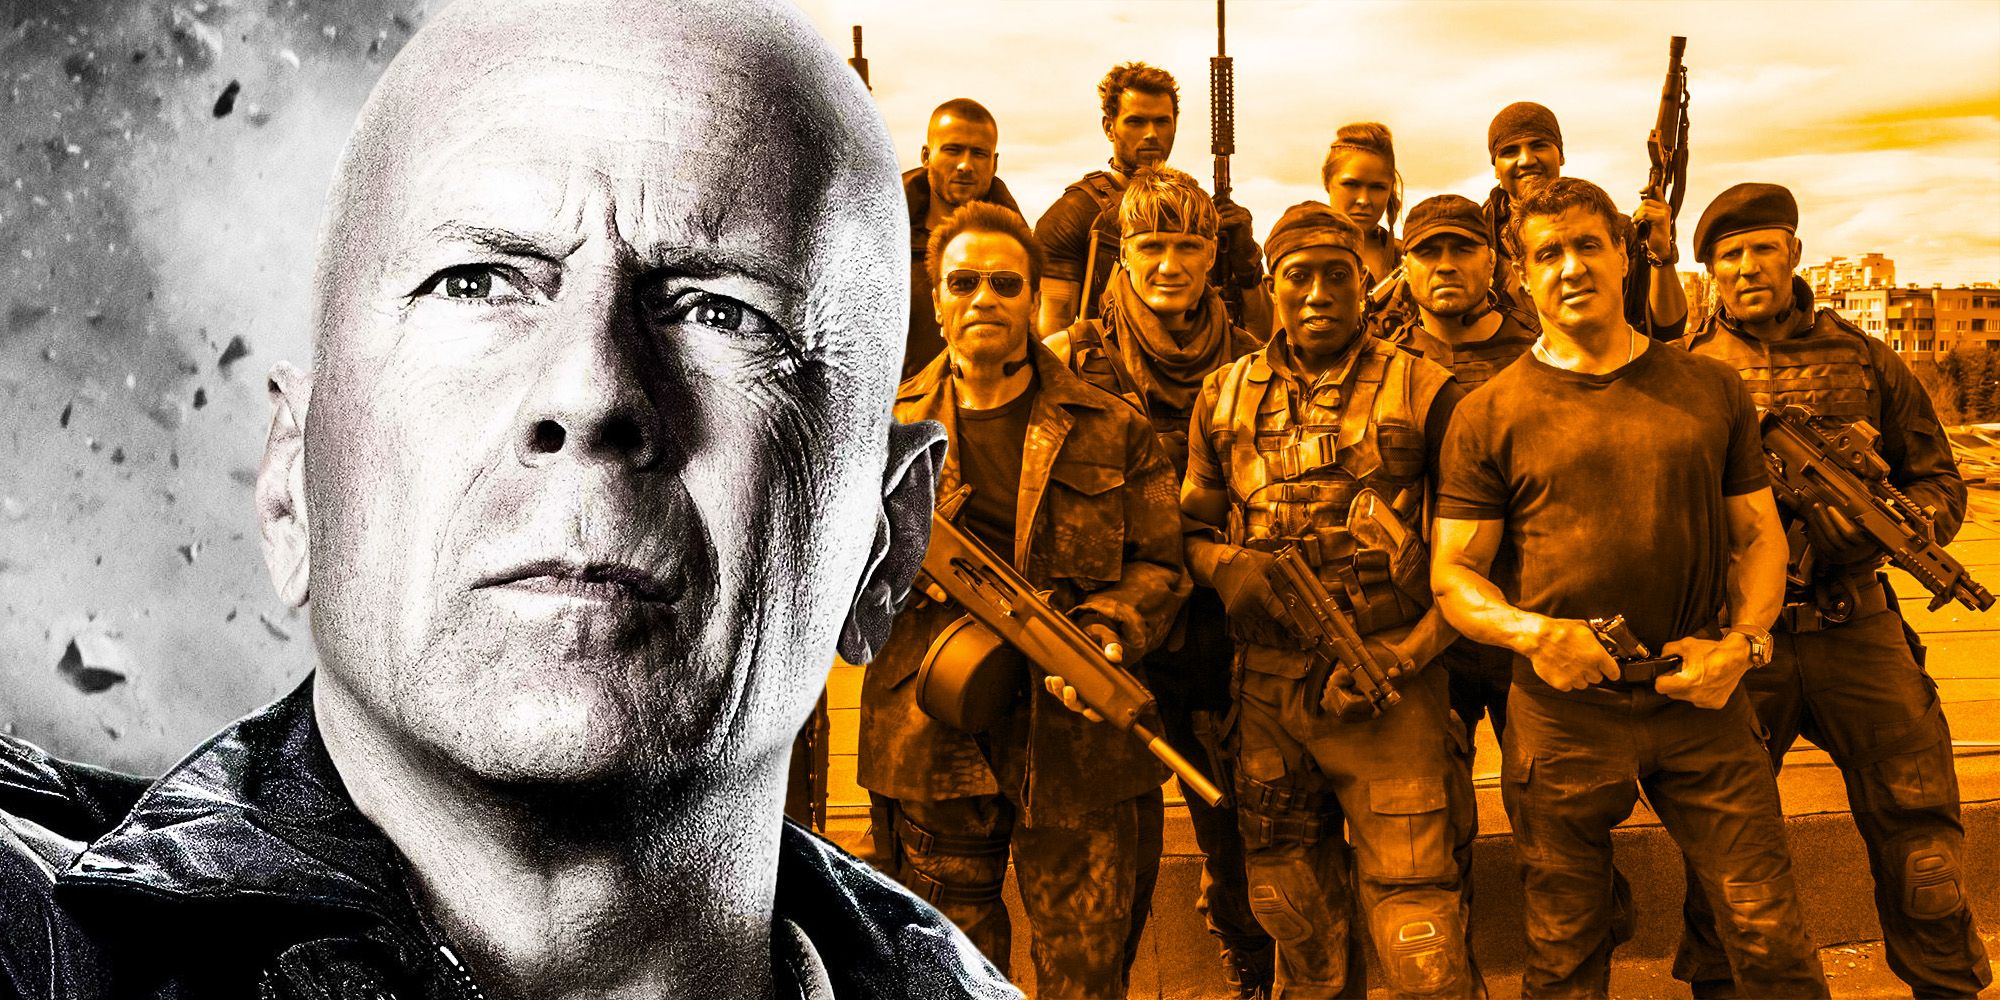 ¿Por qué Bruce Willis no regresó para The Expendables 3?